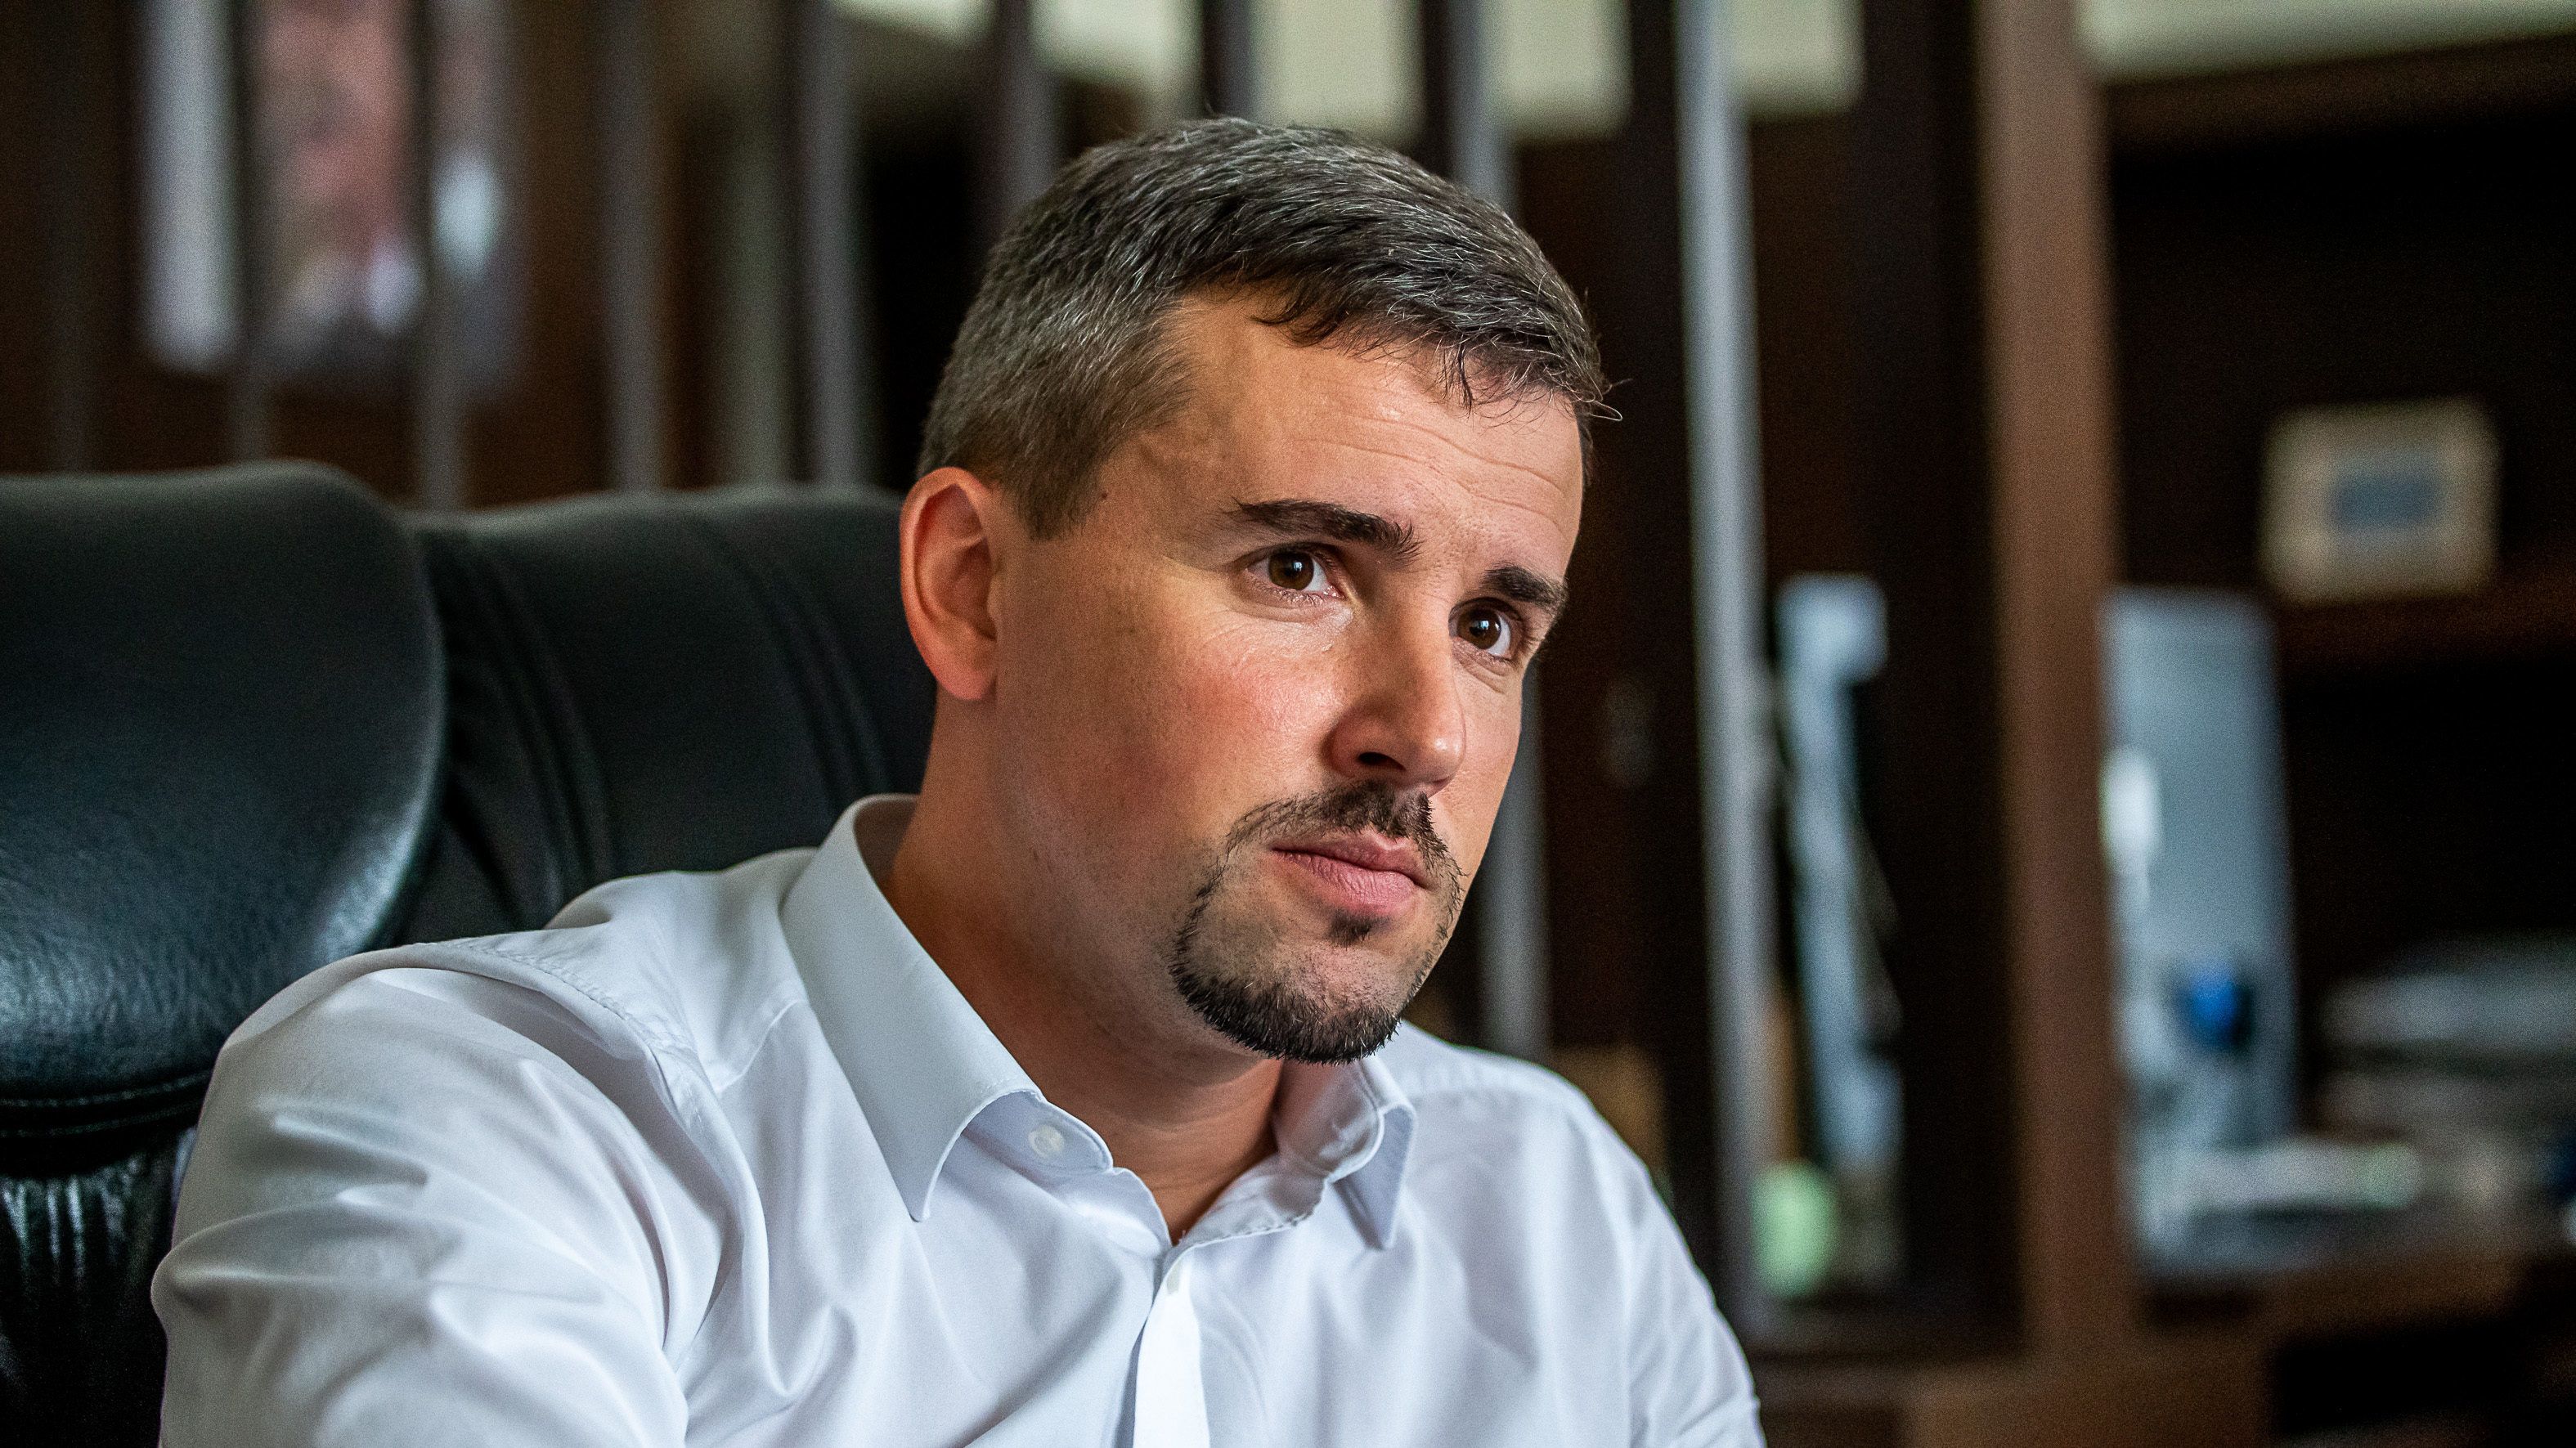 Elutasította a Jobbik panaszát a strasbourgi bíróság az ÁSZ-bírságról